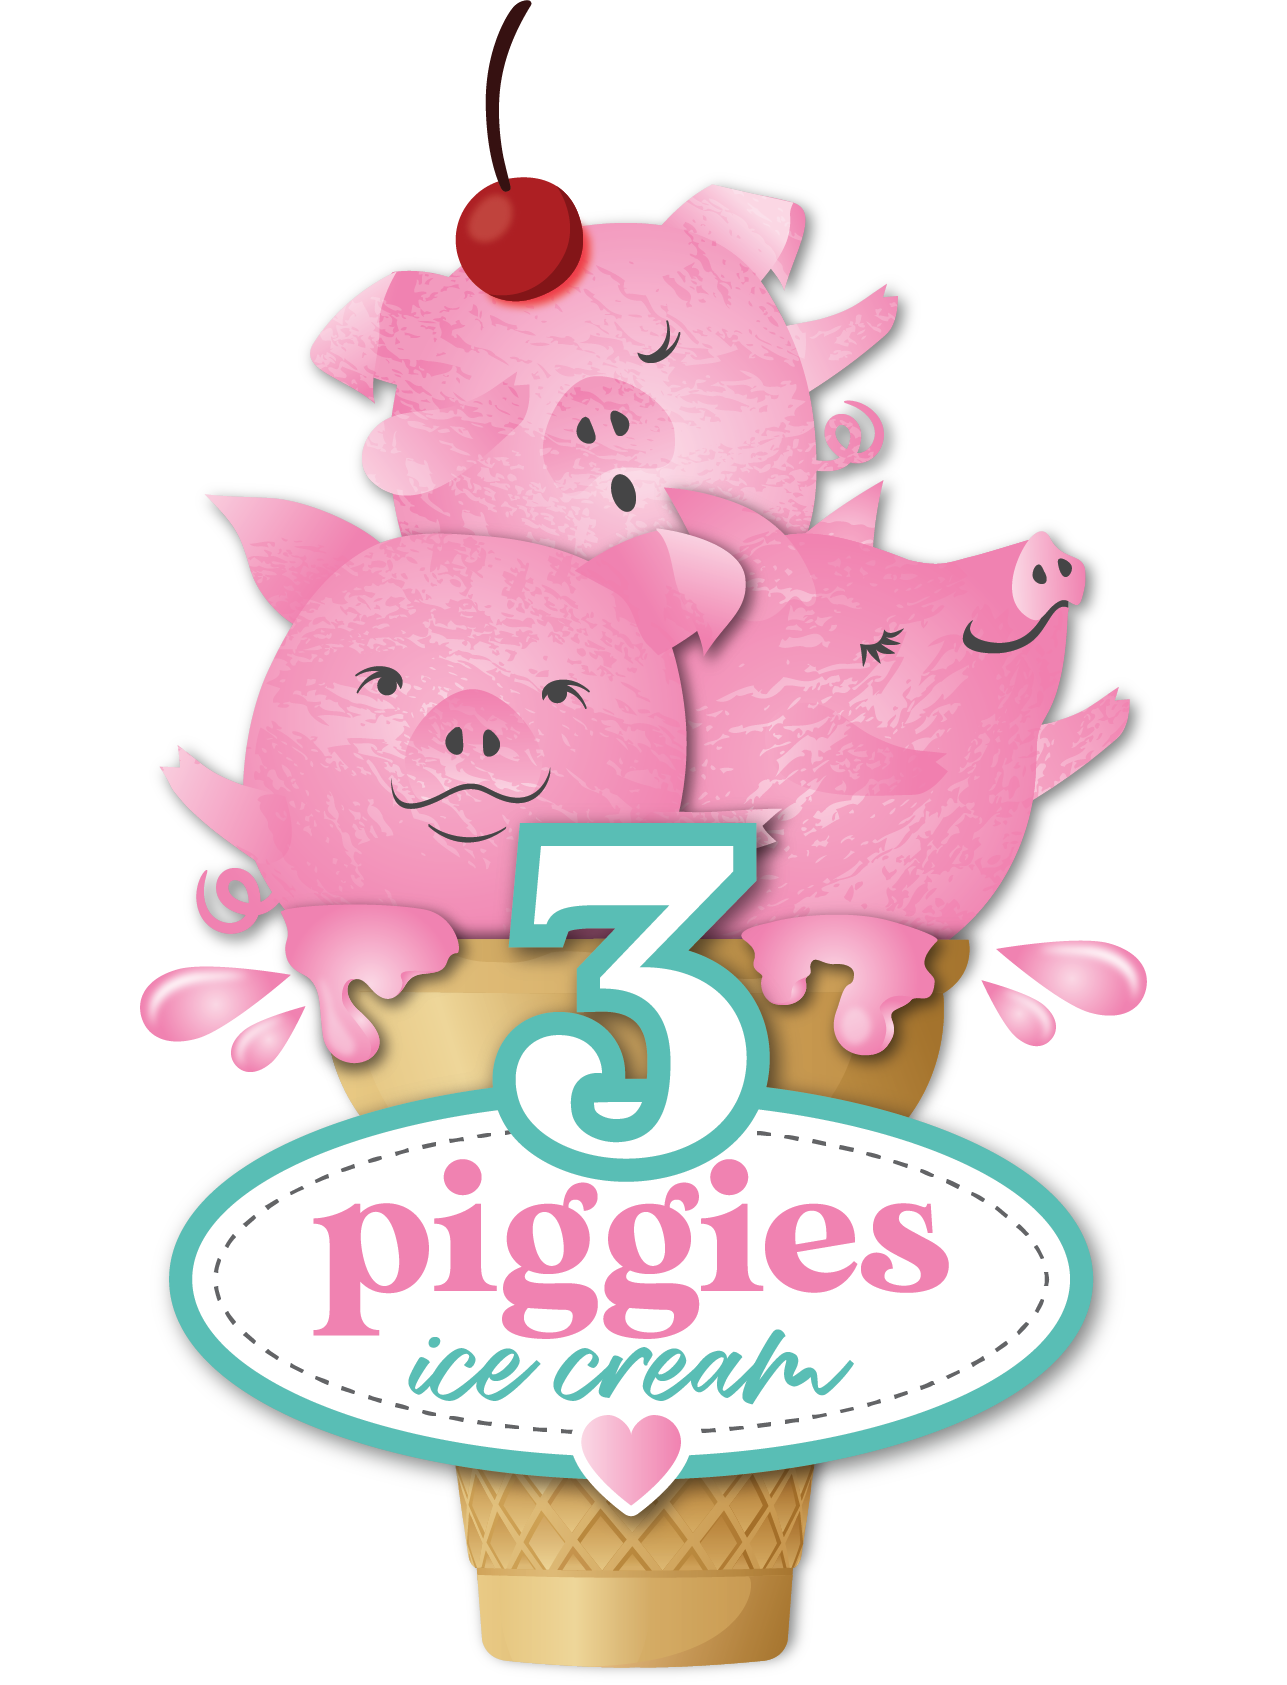 3 Piggies Ice Cream